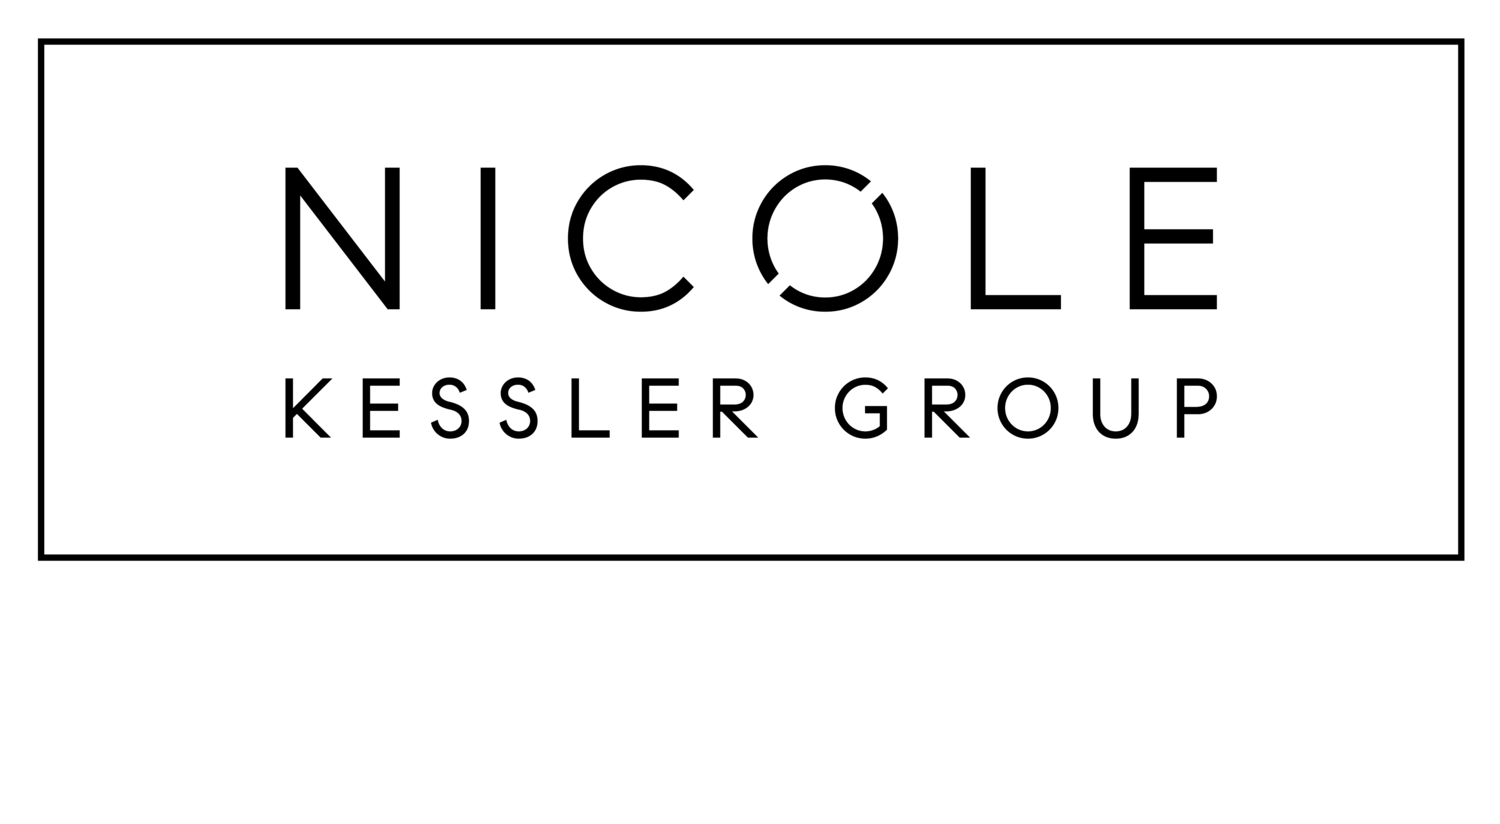 Caroline Kapsner | Nicole Kessler Group